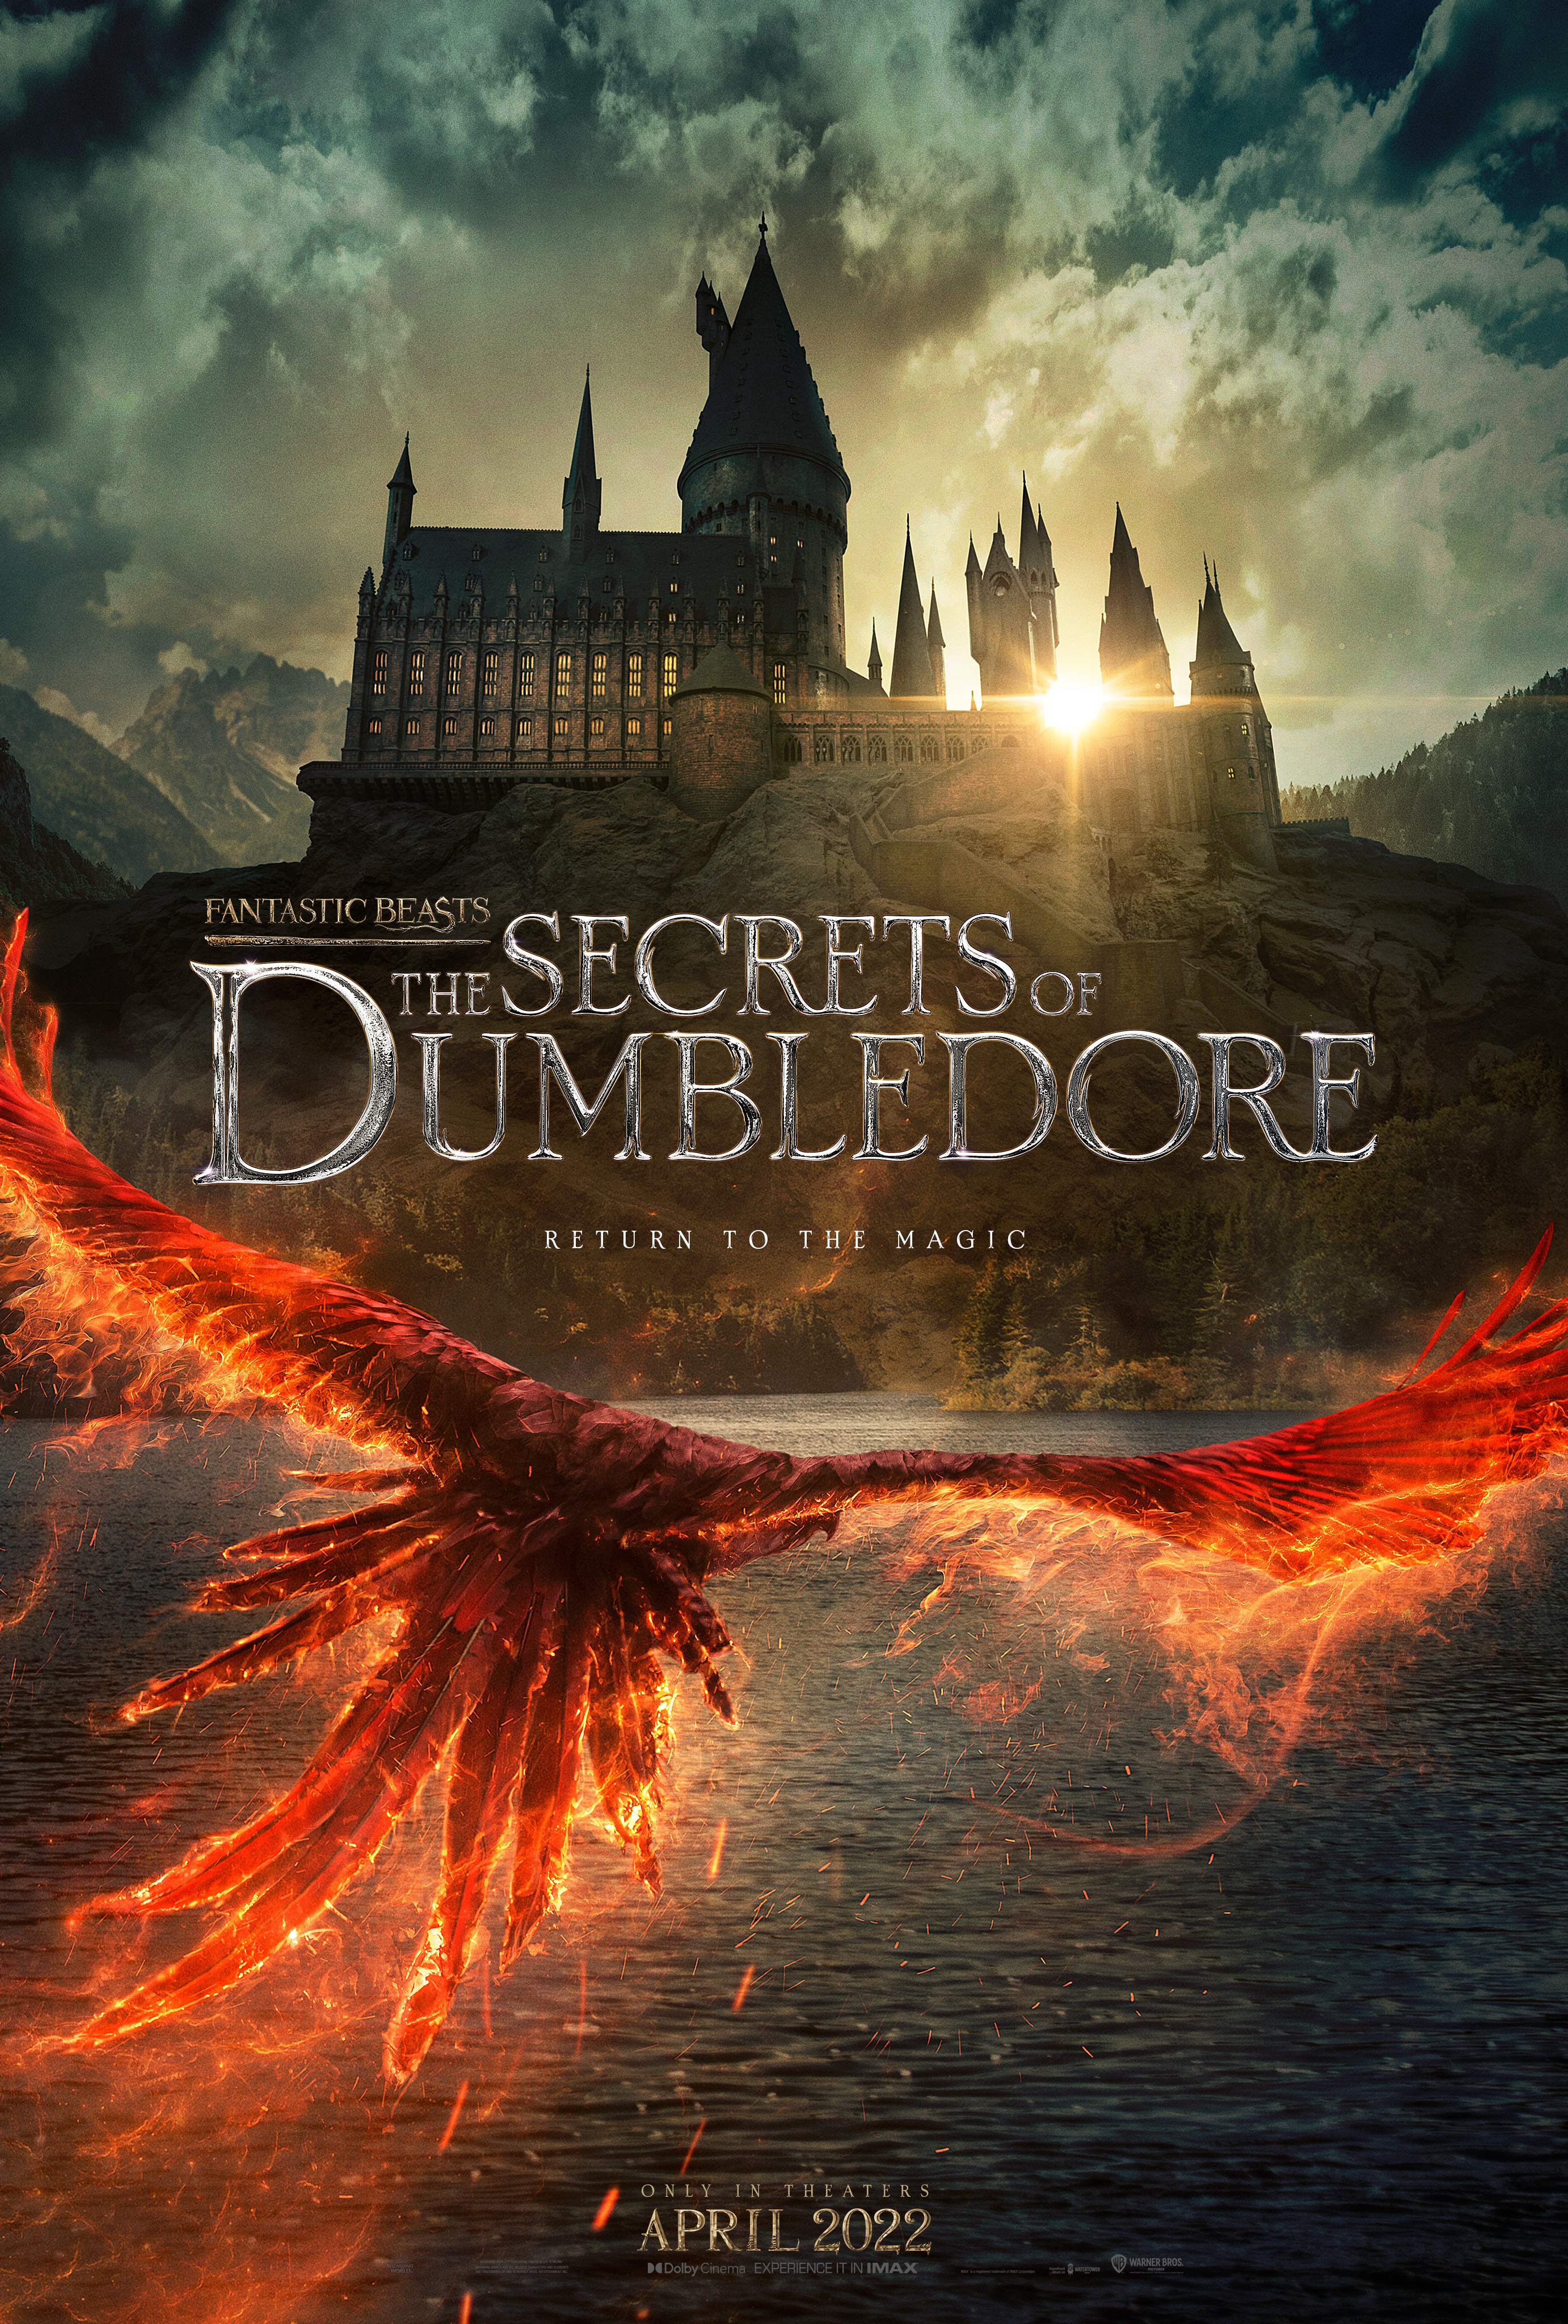 FB_The_Secrets_of_Dumbledore_Phoenix_Poster